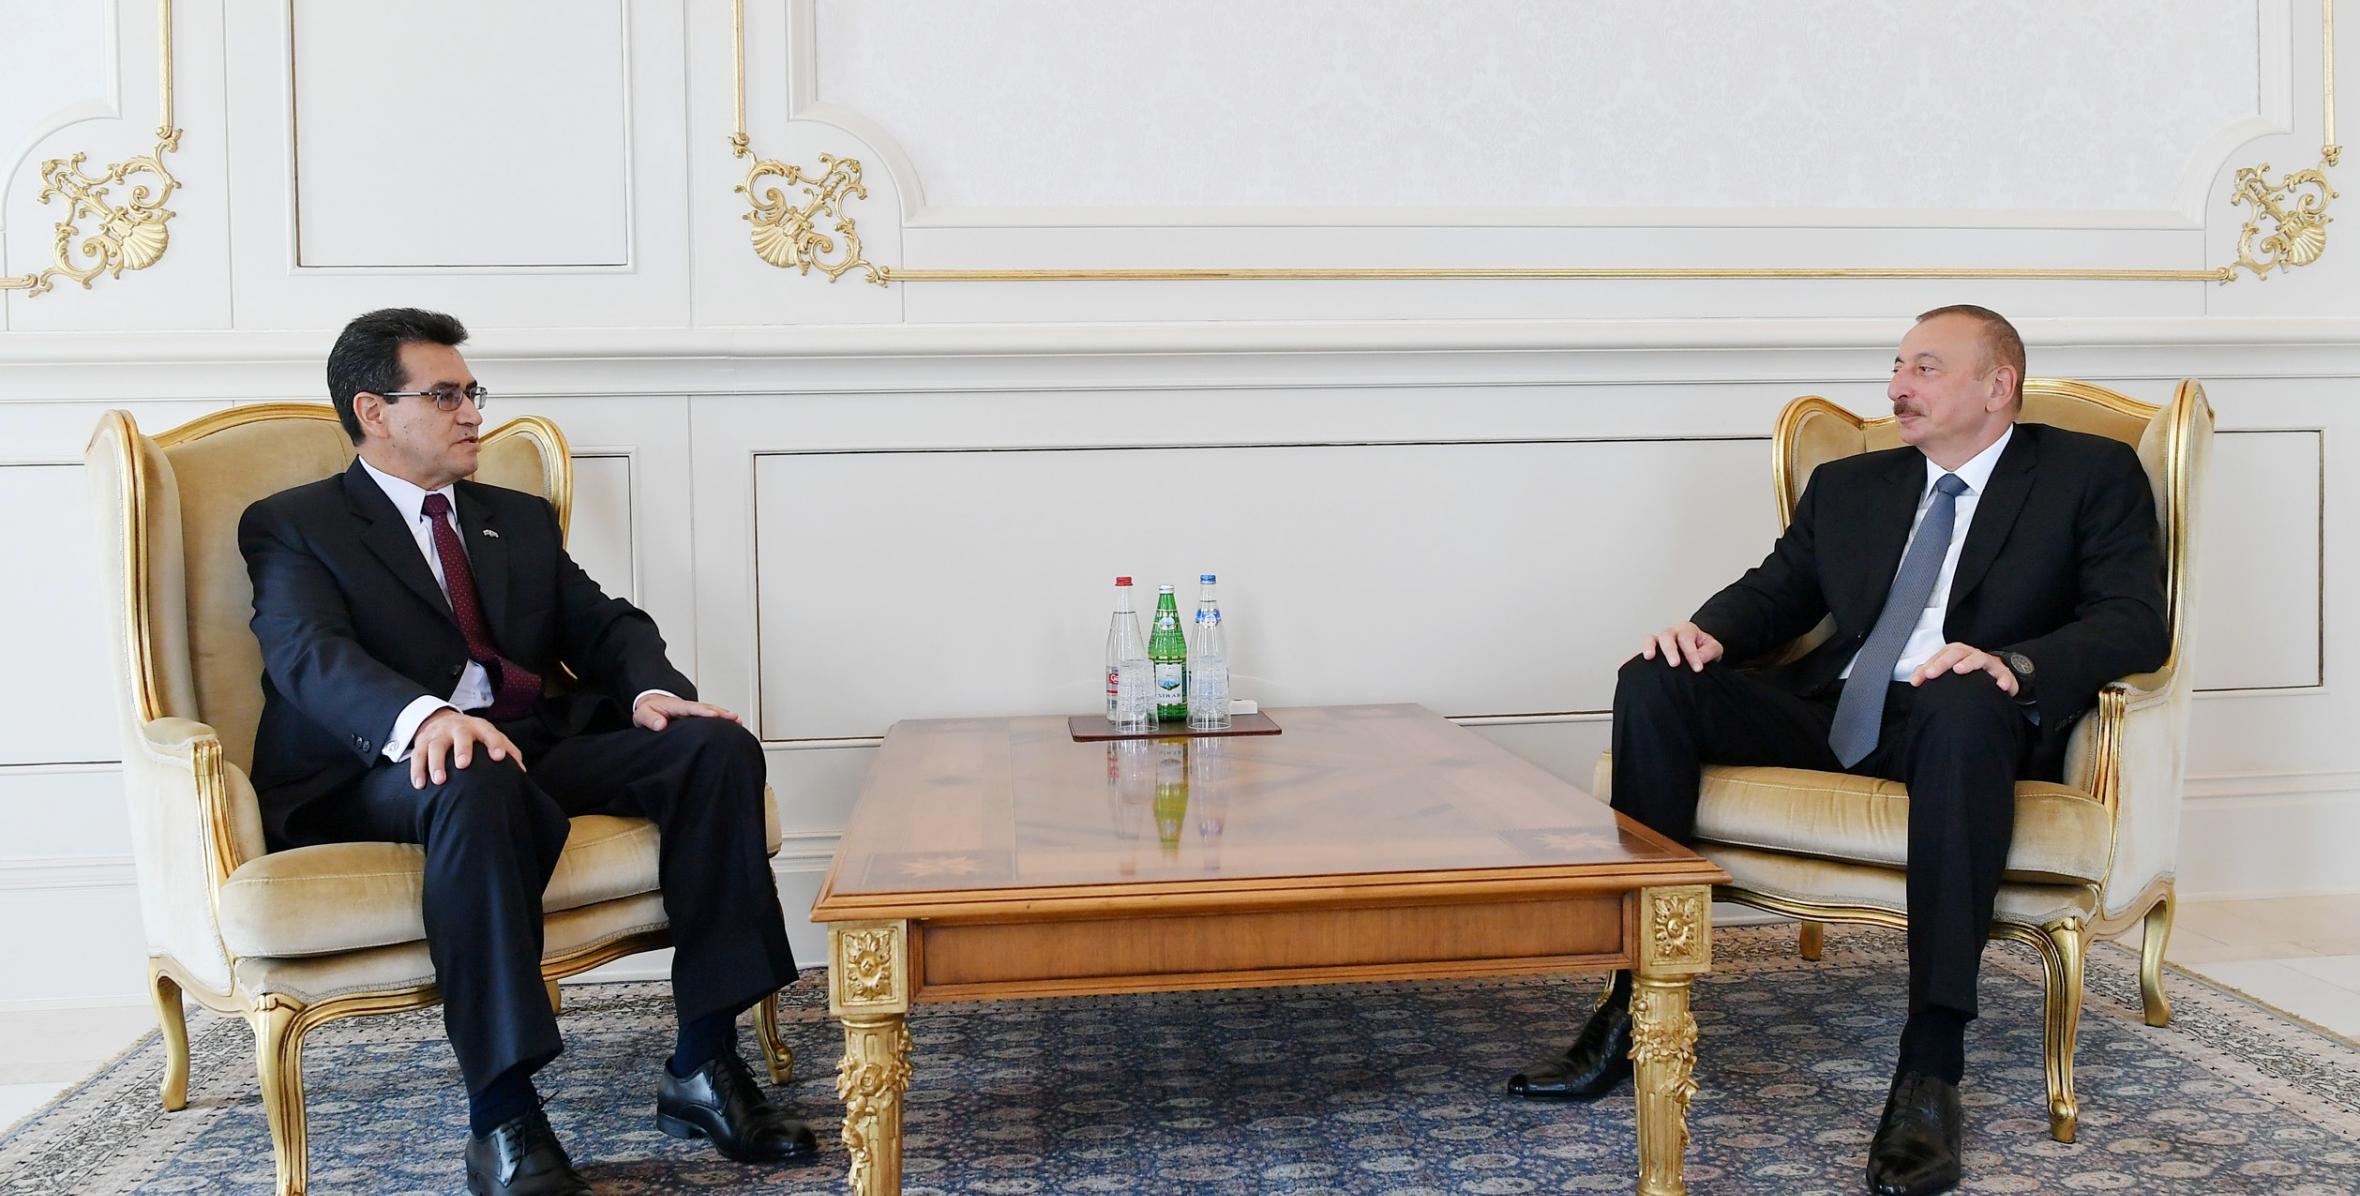 Ильхам Алиев принял верительные грамоты новоназначенного посла Колумбии в Азербайджане